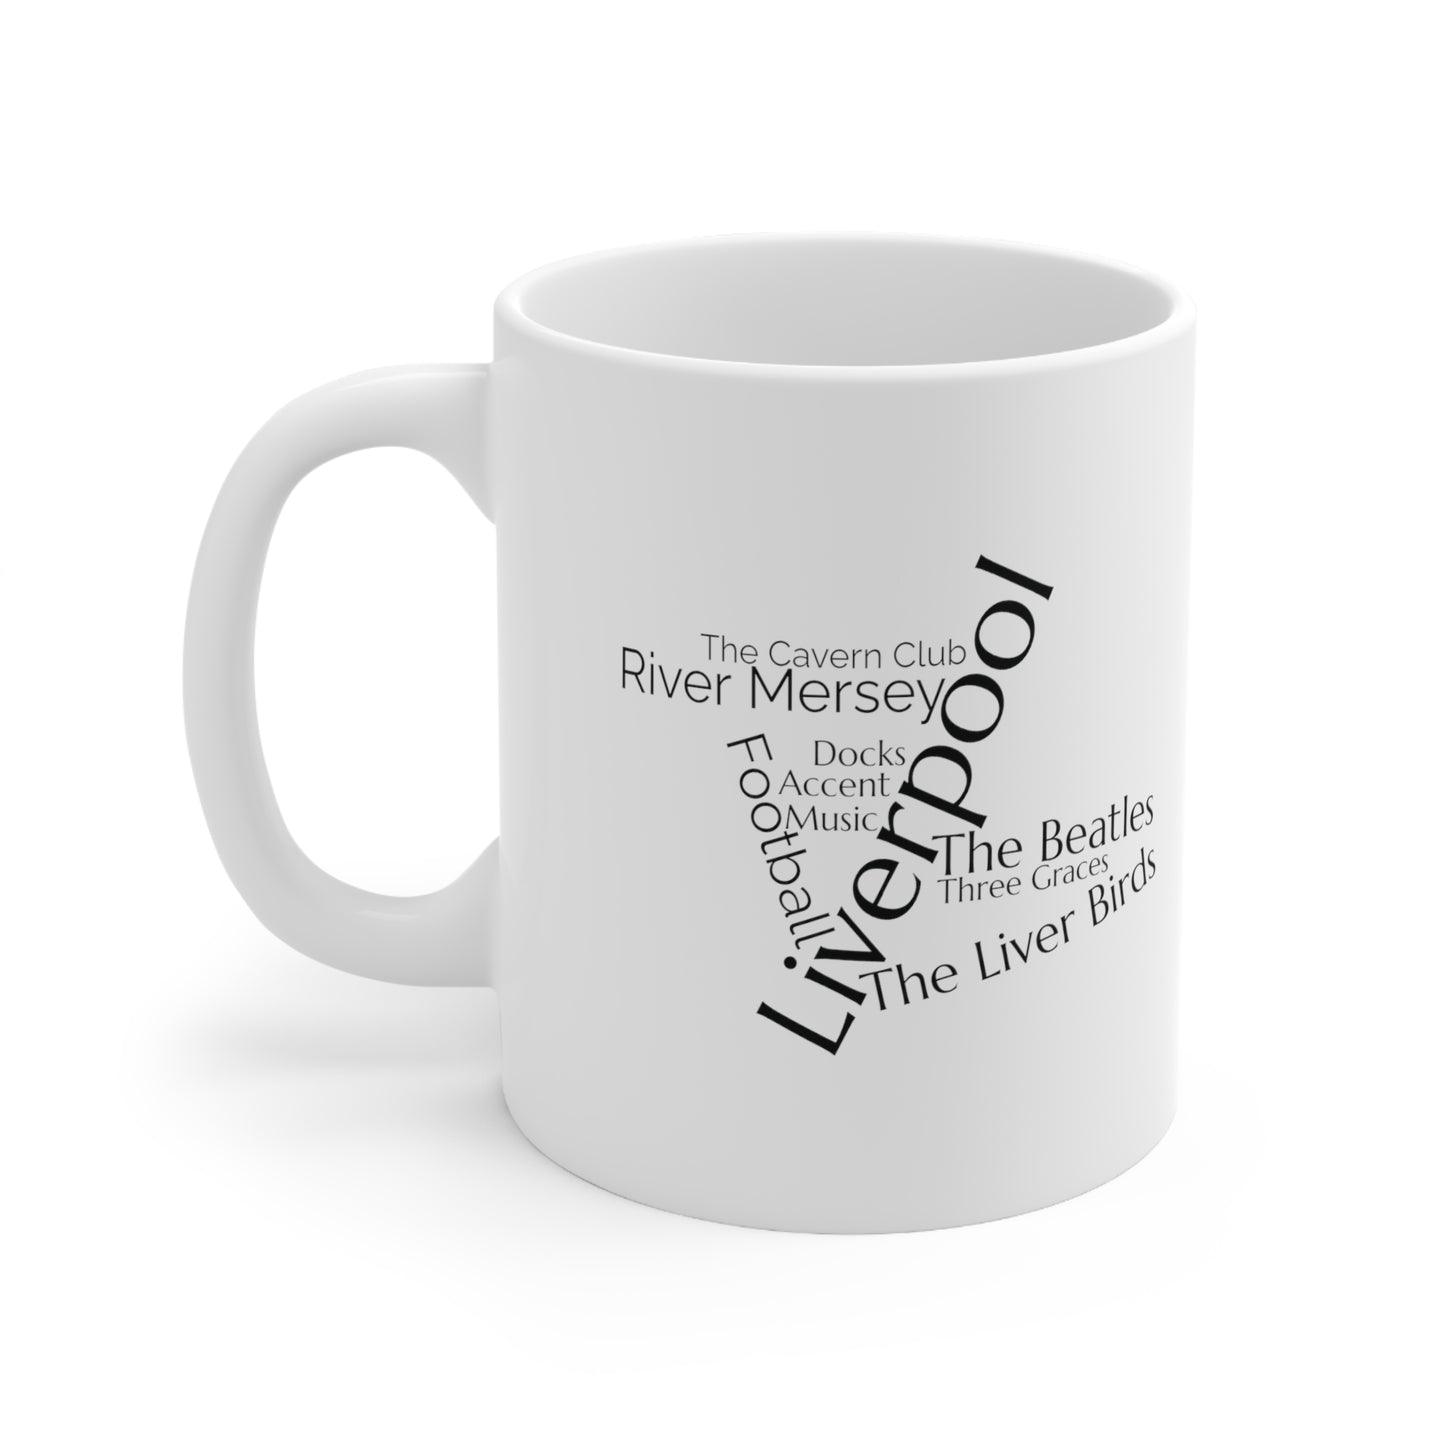 Liverpool word mug, local mug, geography mug, gift, mug, coffee cup, word mug, wordcloud mug, christmas gift, birthday gift